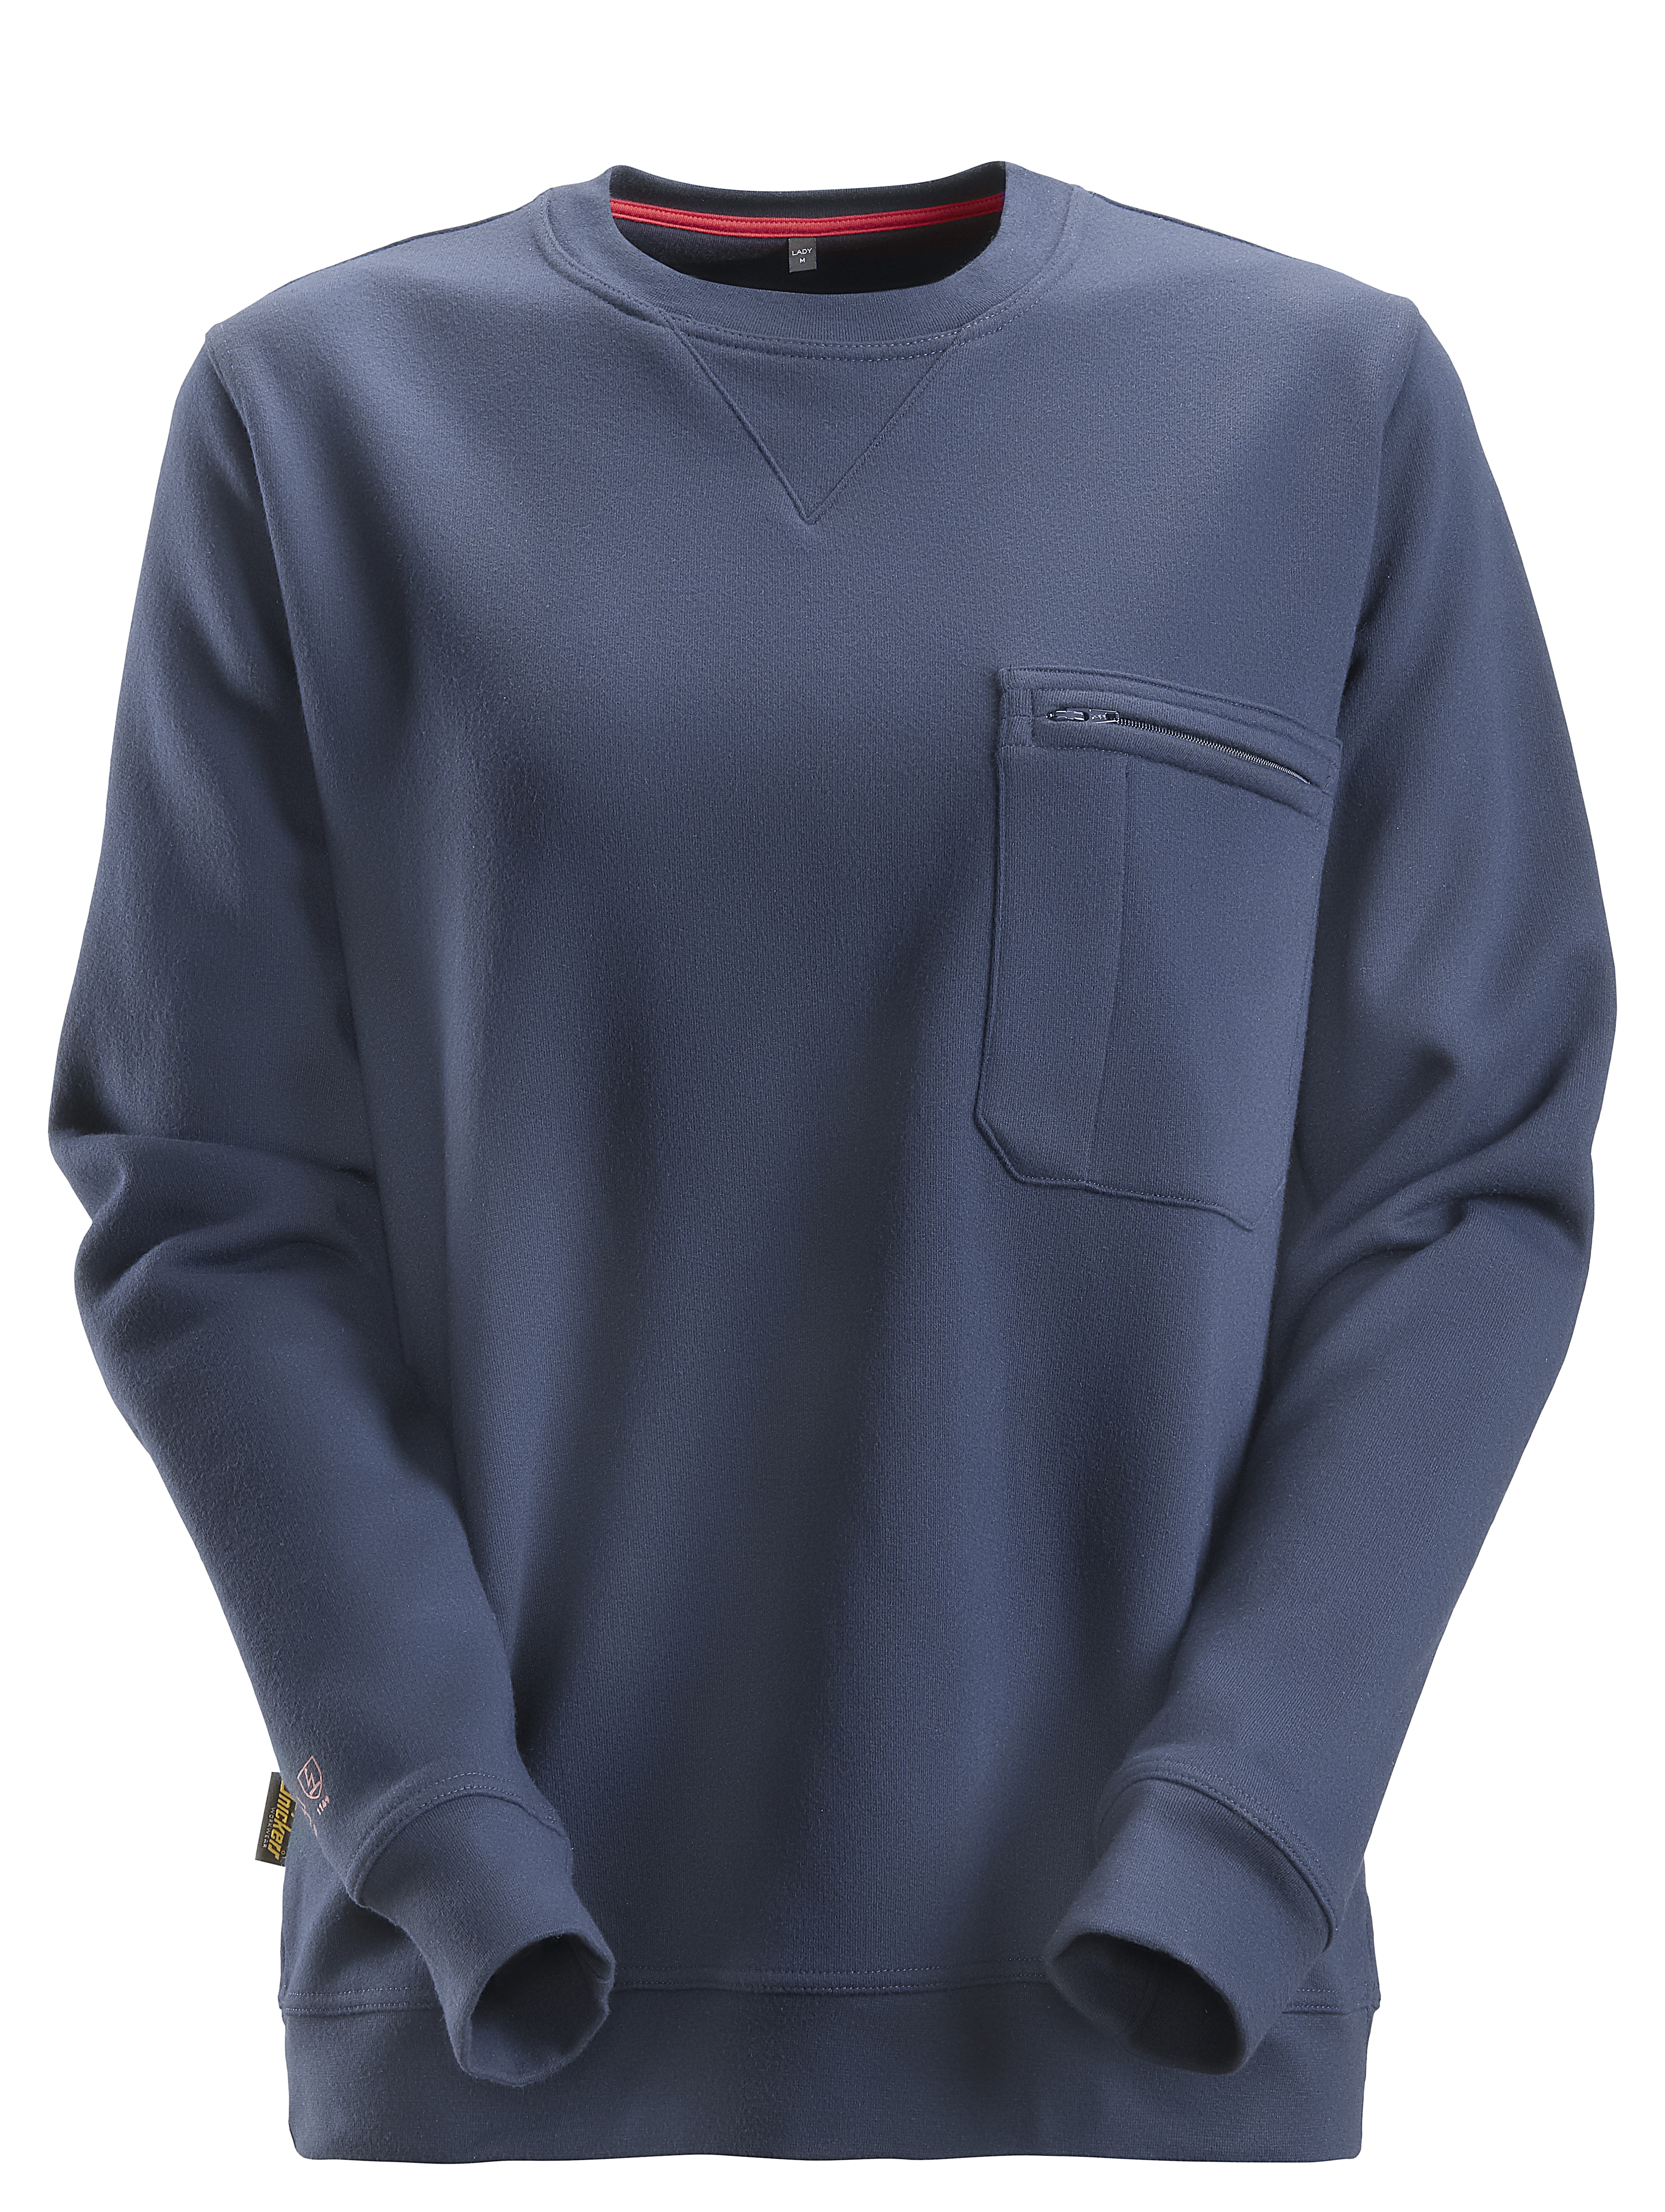 Snickers ProtecWork Damen-Sweatshirt, EN 11612